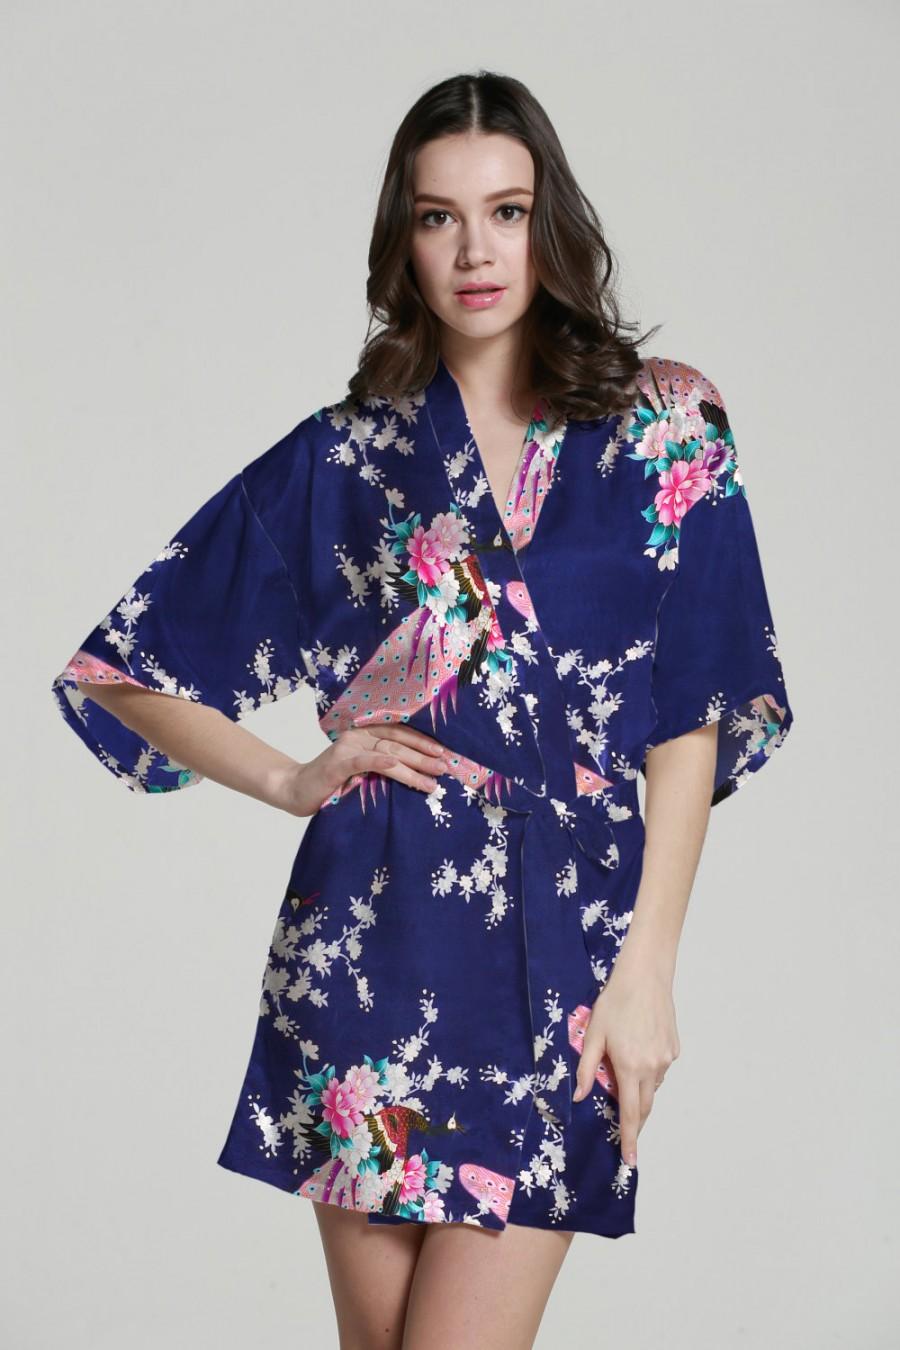 Mariage - Baby kimono robe kimono maxi dress silk kimono dressing gown satin kimono robe japanese kimono bathrobes wedding party gift idea bathrobe